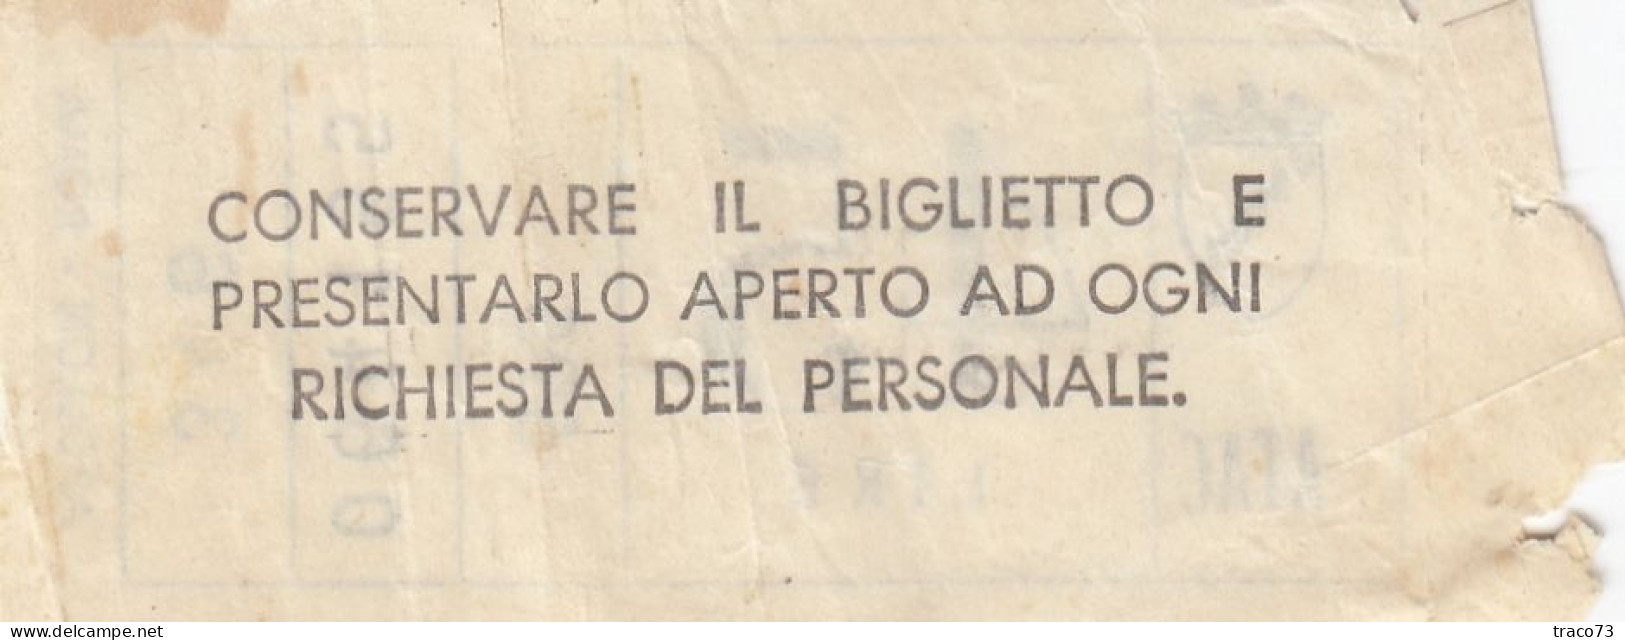 ATAC - ROMA  _ Anni '50-'60 /  Ticket  _ Biglietto Da Lire 45 - Europa